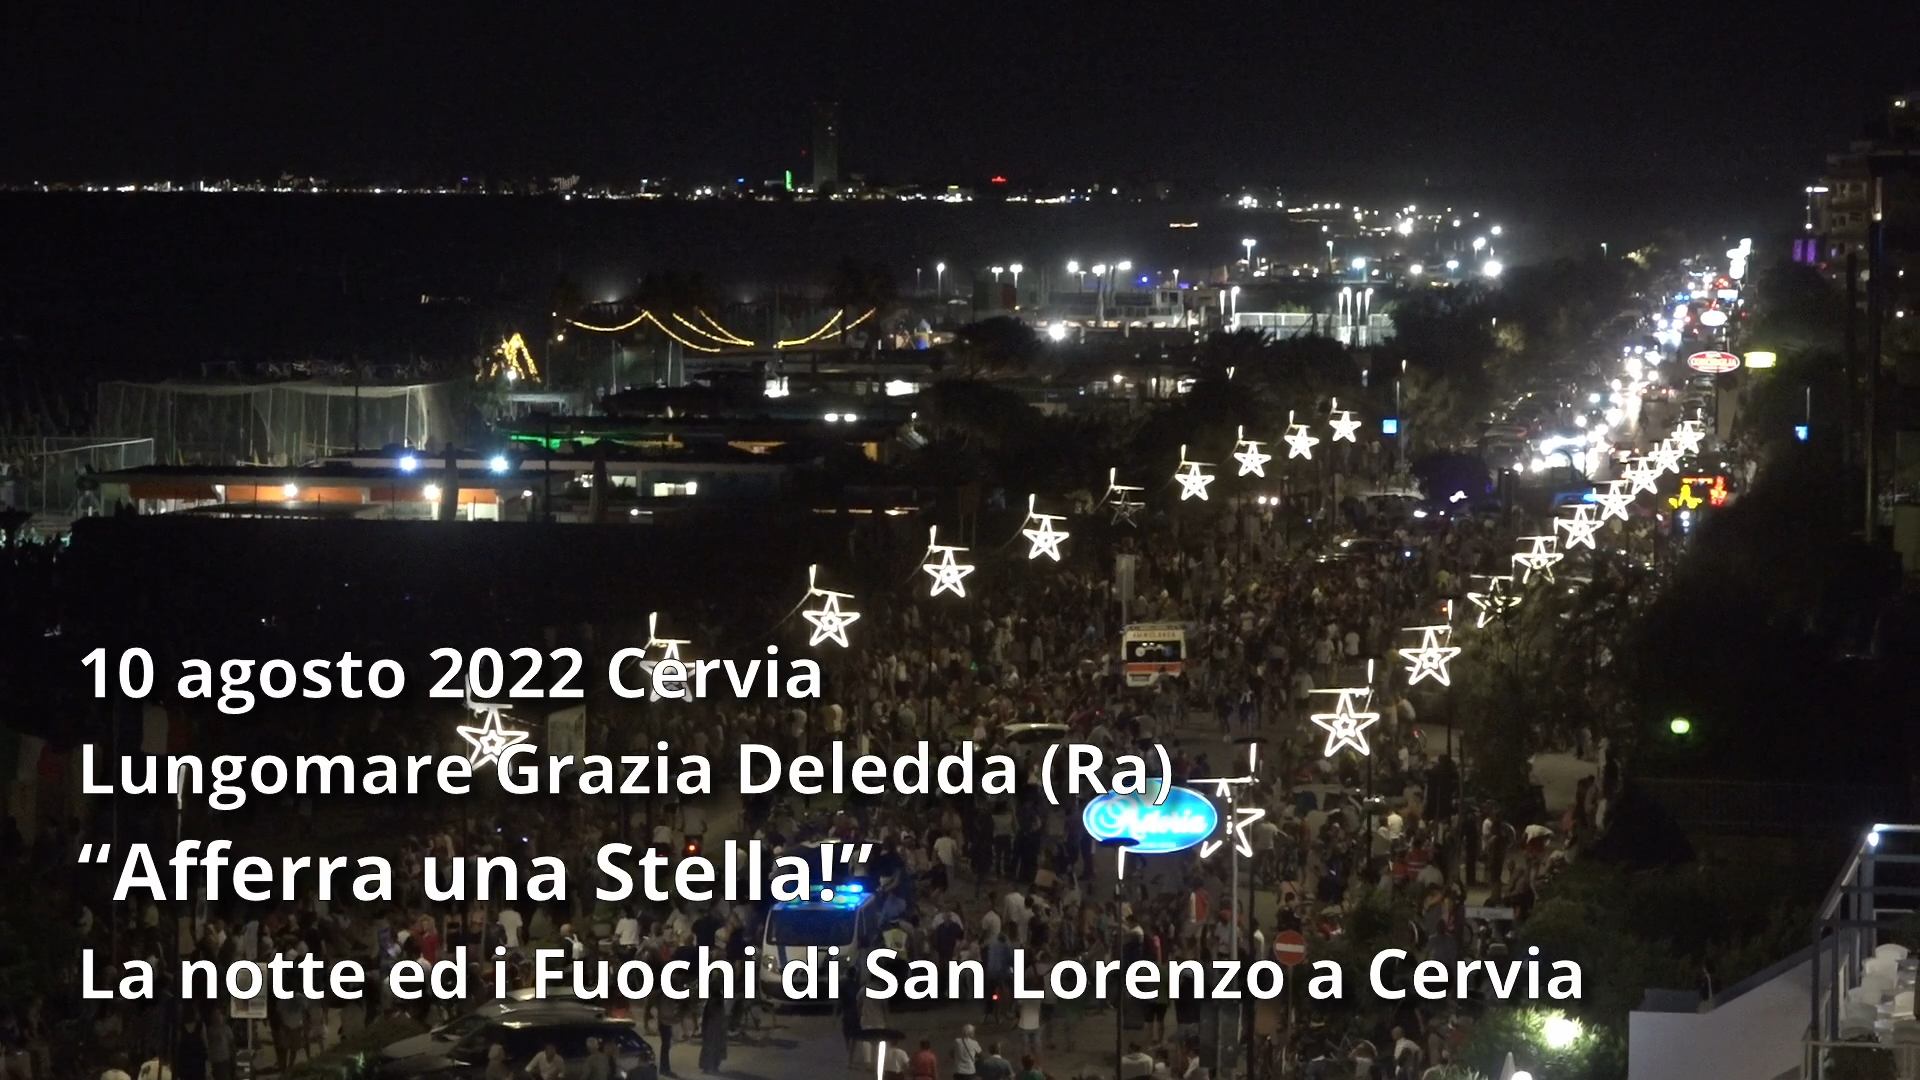 “Afferra una Stella!”: La Notte ed i Fuochi di San Lorenzo a Cervia